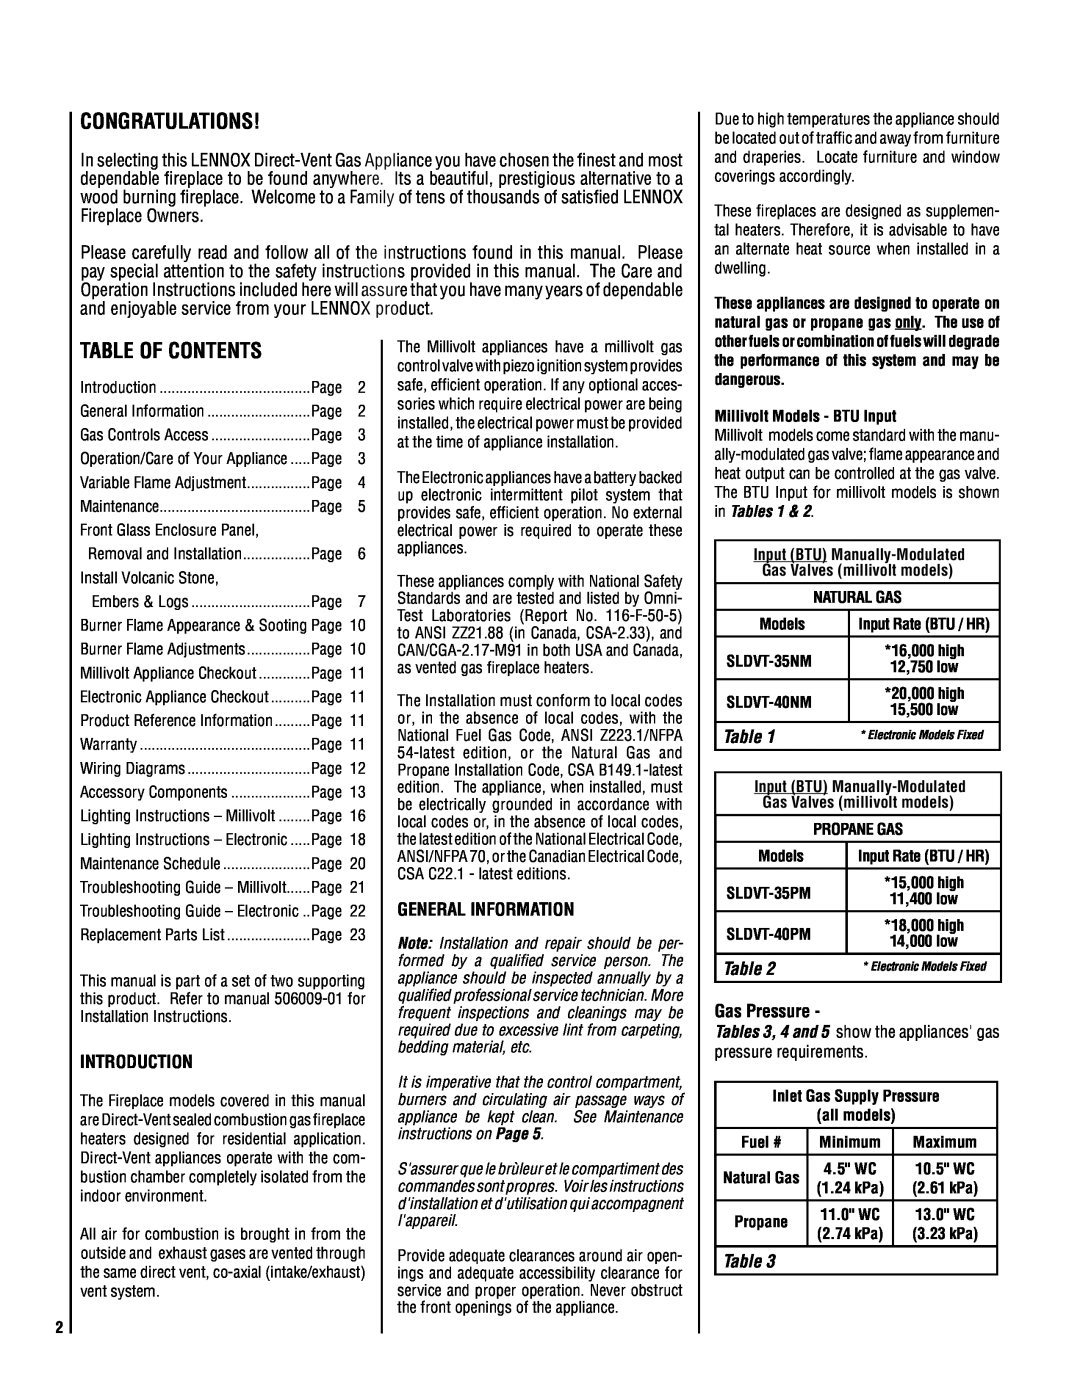 TOA Electronics SLDVT-40, SLDVT-35 manual Introduction, General Information, Gas Pressure 